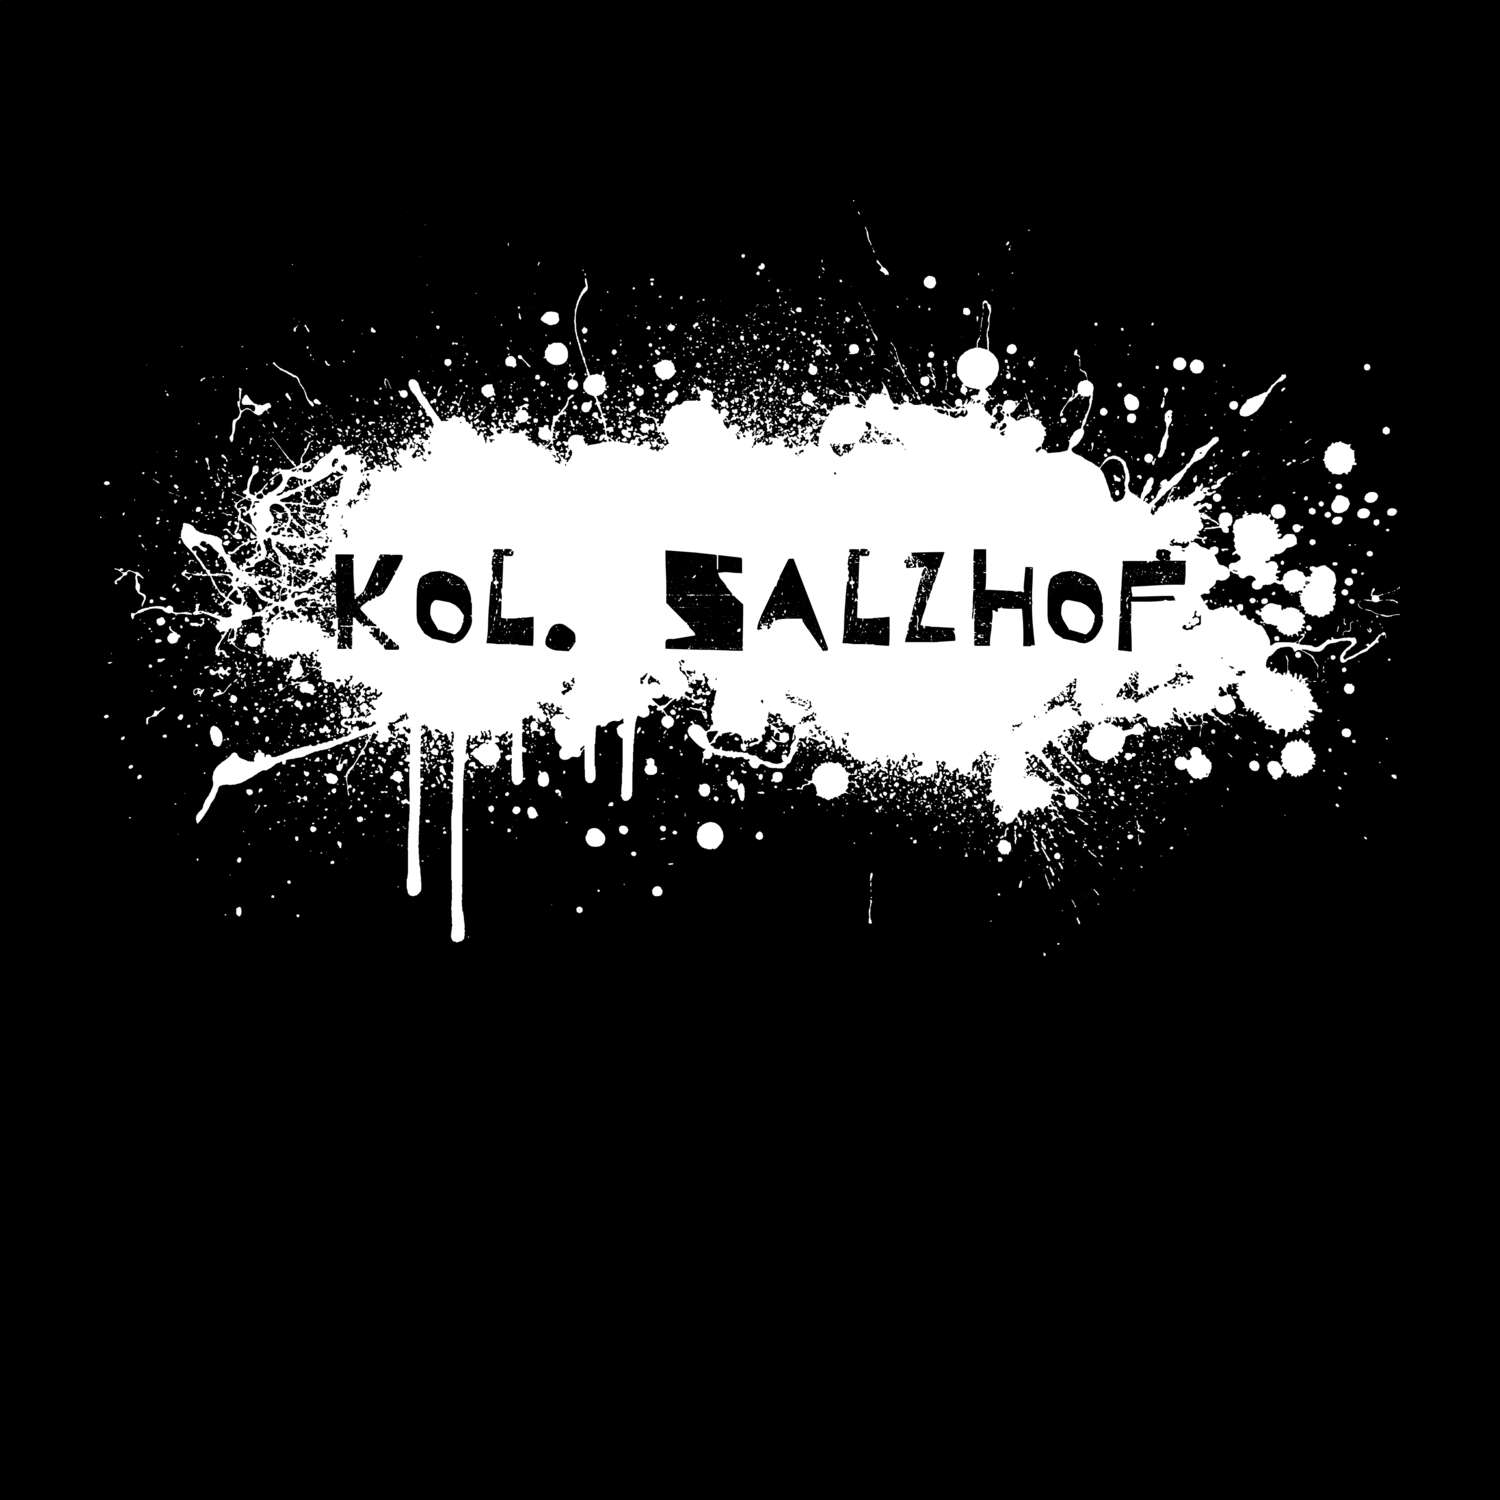 Kol. Salzhof T-Shirt »Paint Splash Punk«